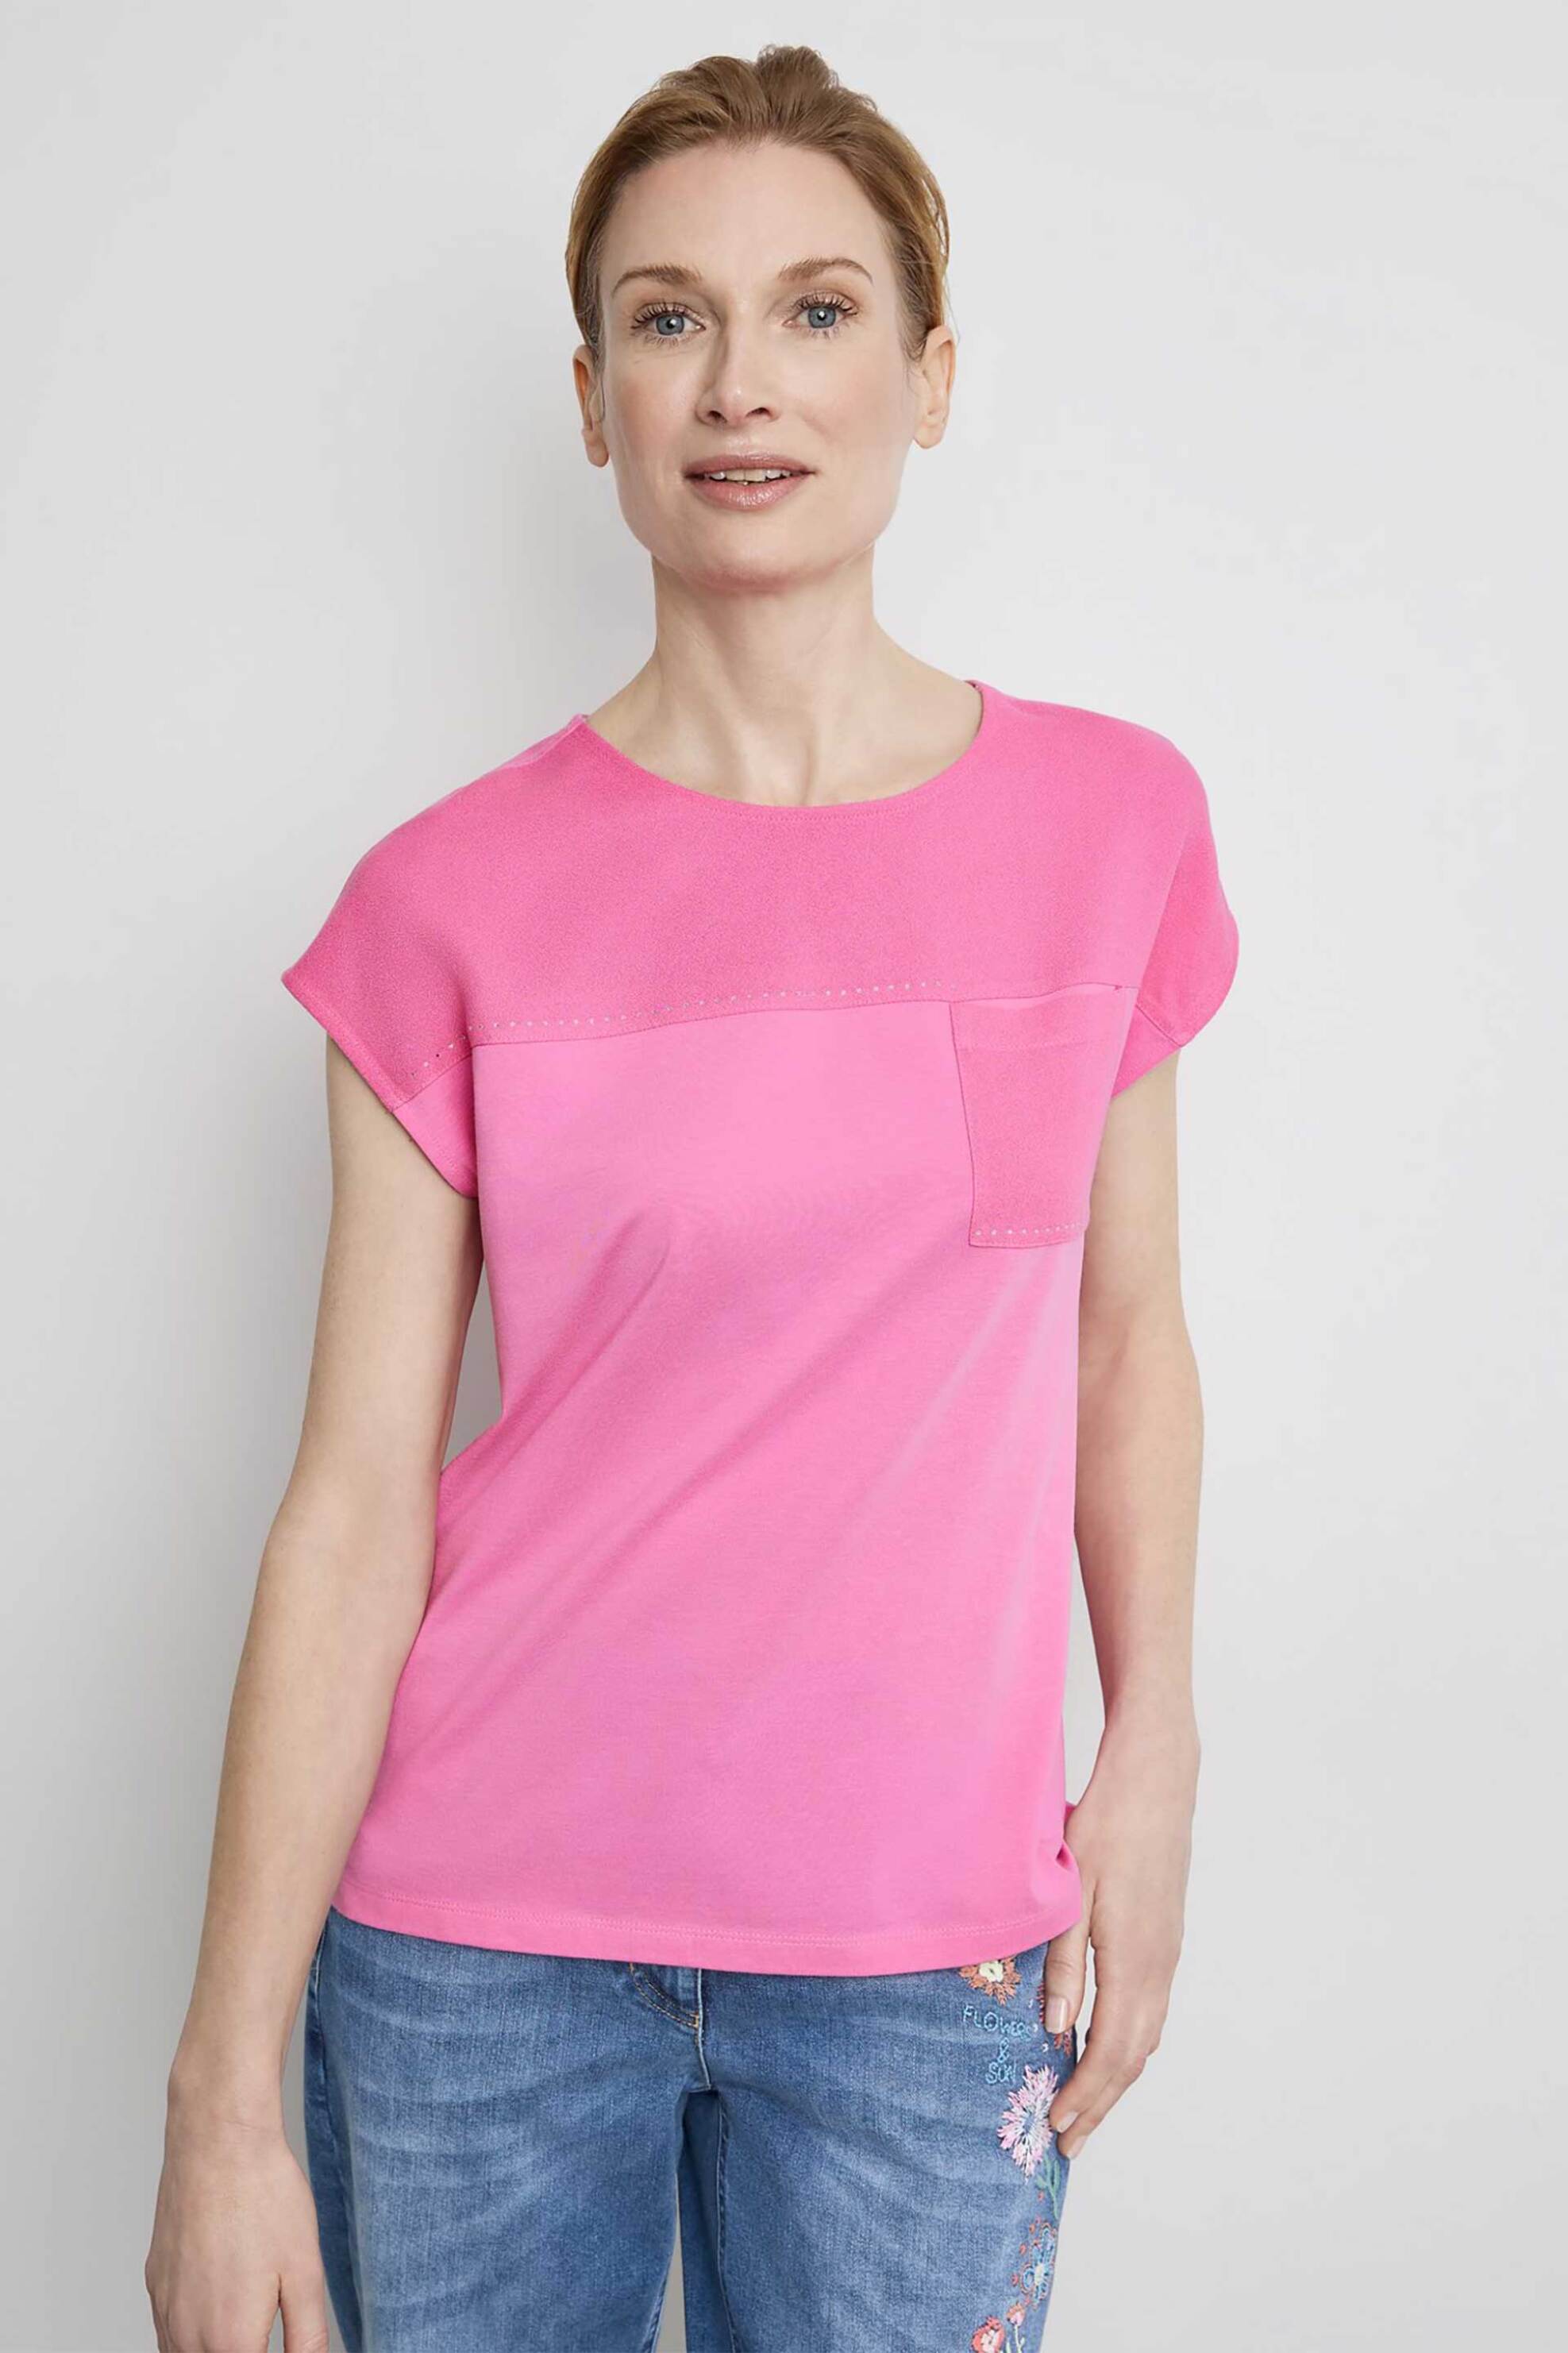 Γυναικεία Ρούχα & Αξεσουάρ > Γυναικεία Ρούχα > Γυναικεία Τοπ > Γυναικεία T-Shirts Gerry Weber γυναικείο T-shirt με τσέπη και διακοσμητικές πέτρες Casual Fit - 270043-44042 Ροζ